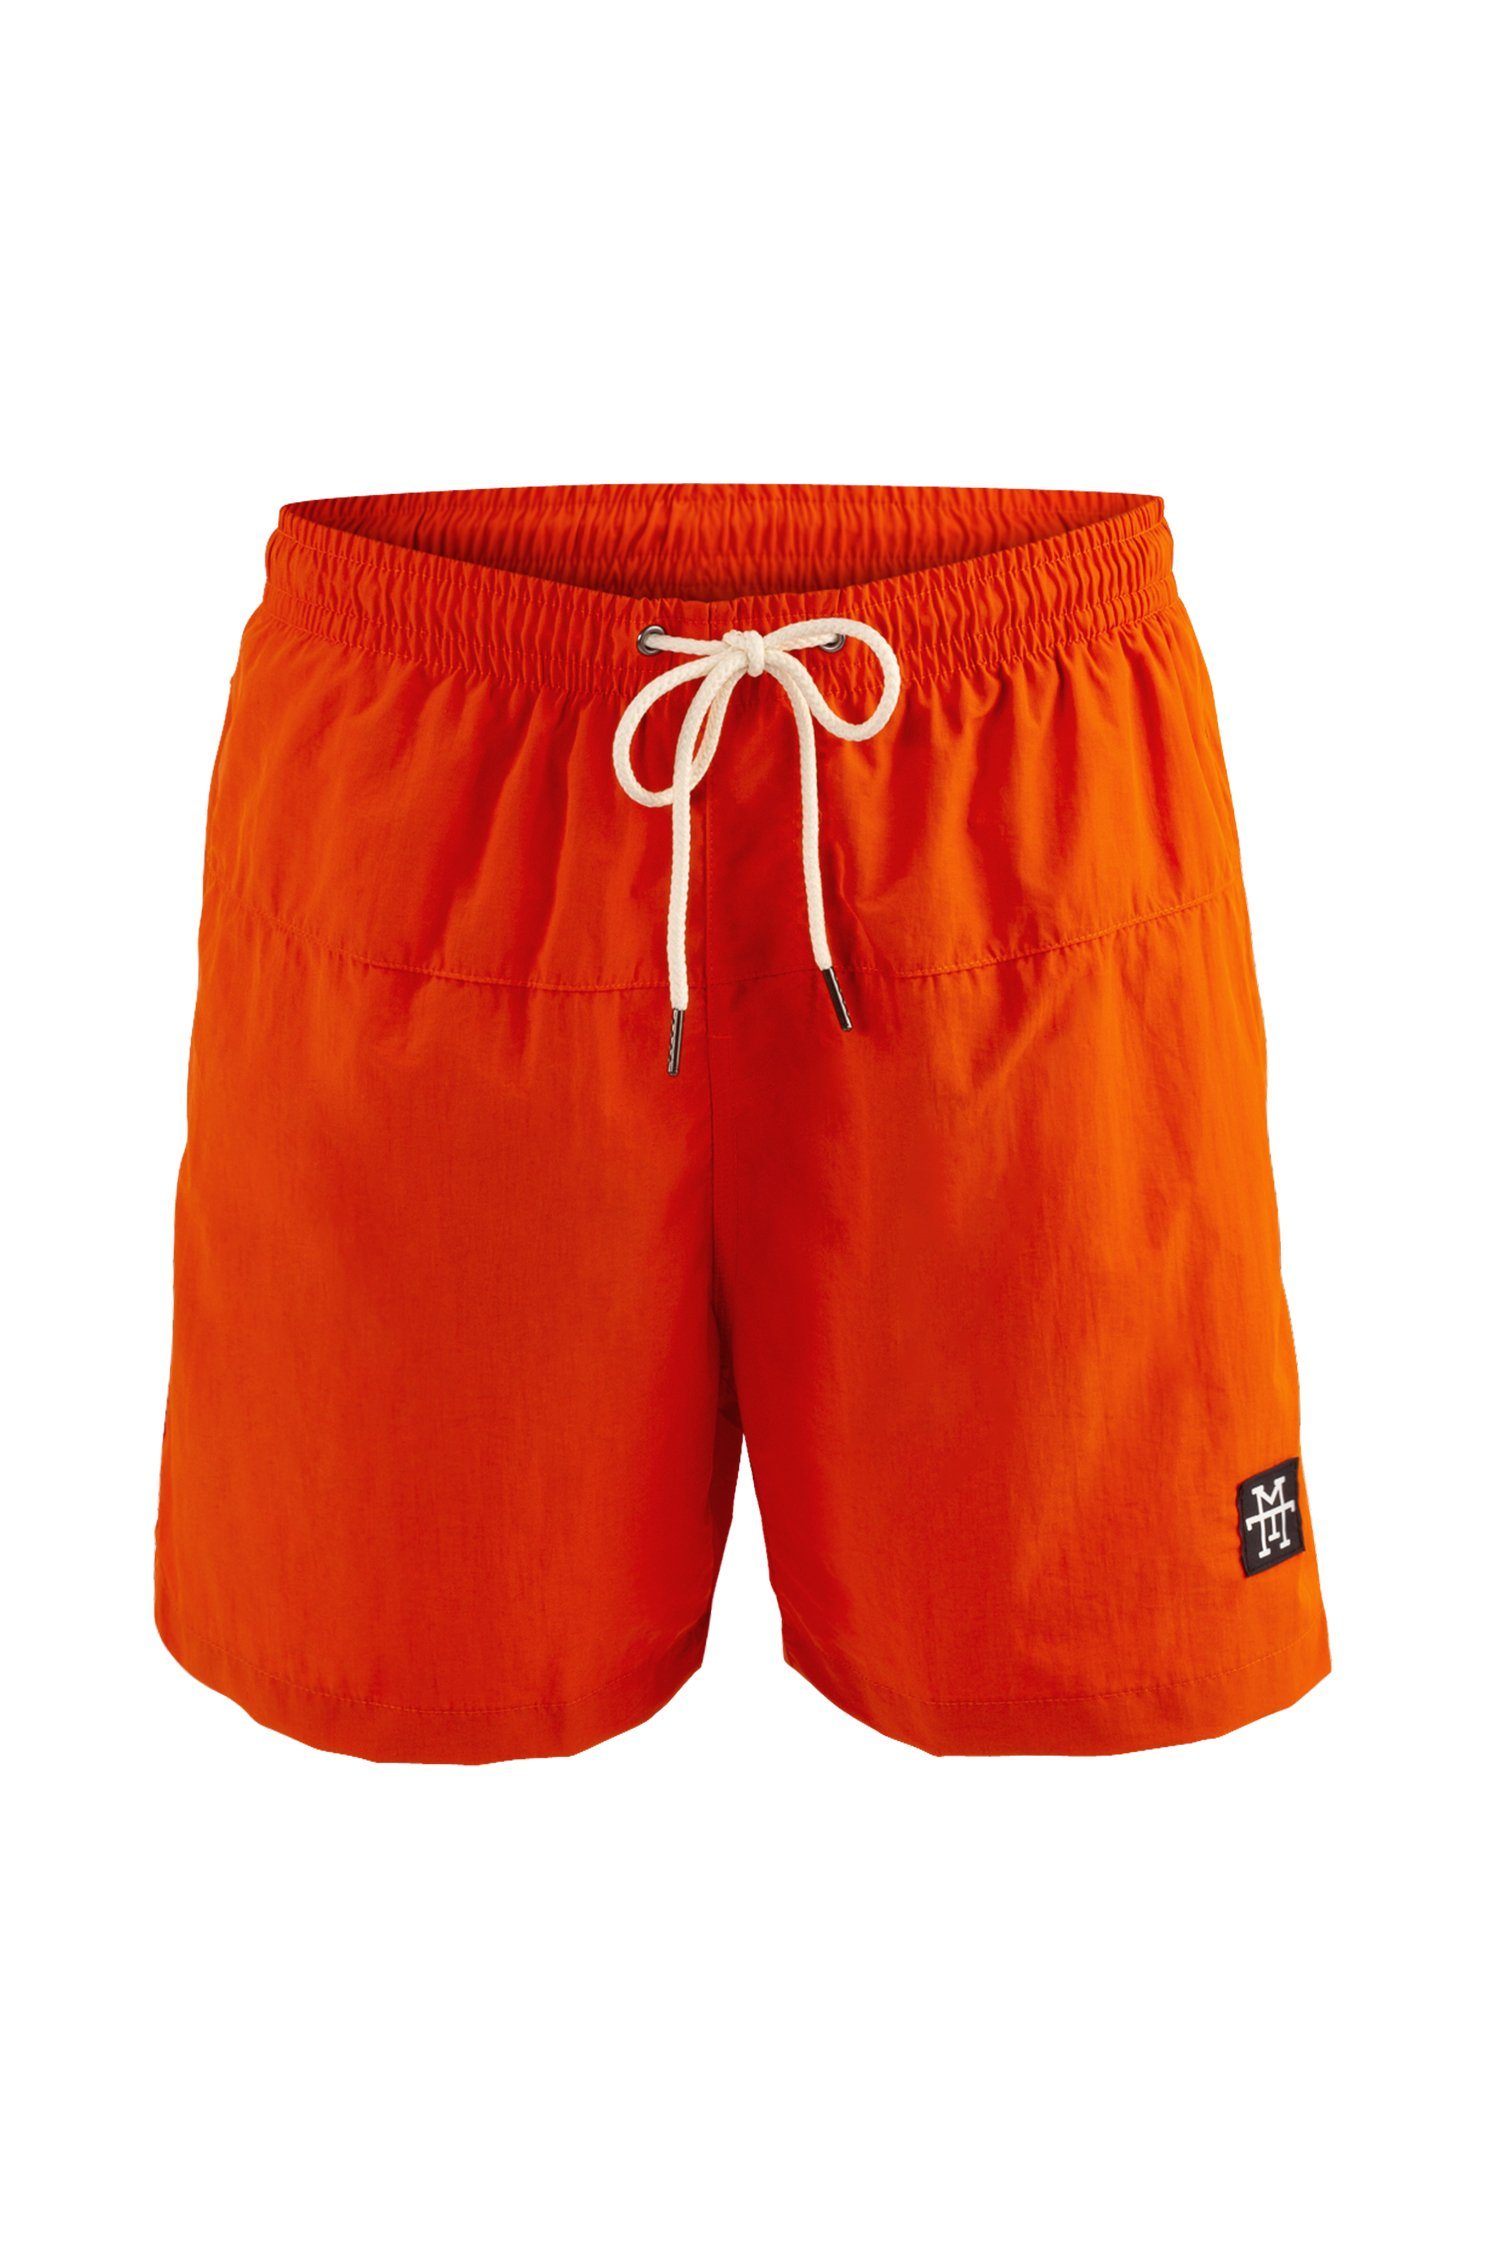 Manufaktur13 Badeshorts Swim Shorts - Badehosen schnelltrocknend Tangerine